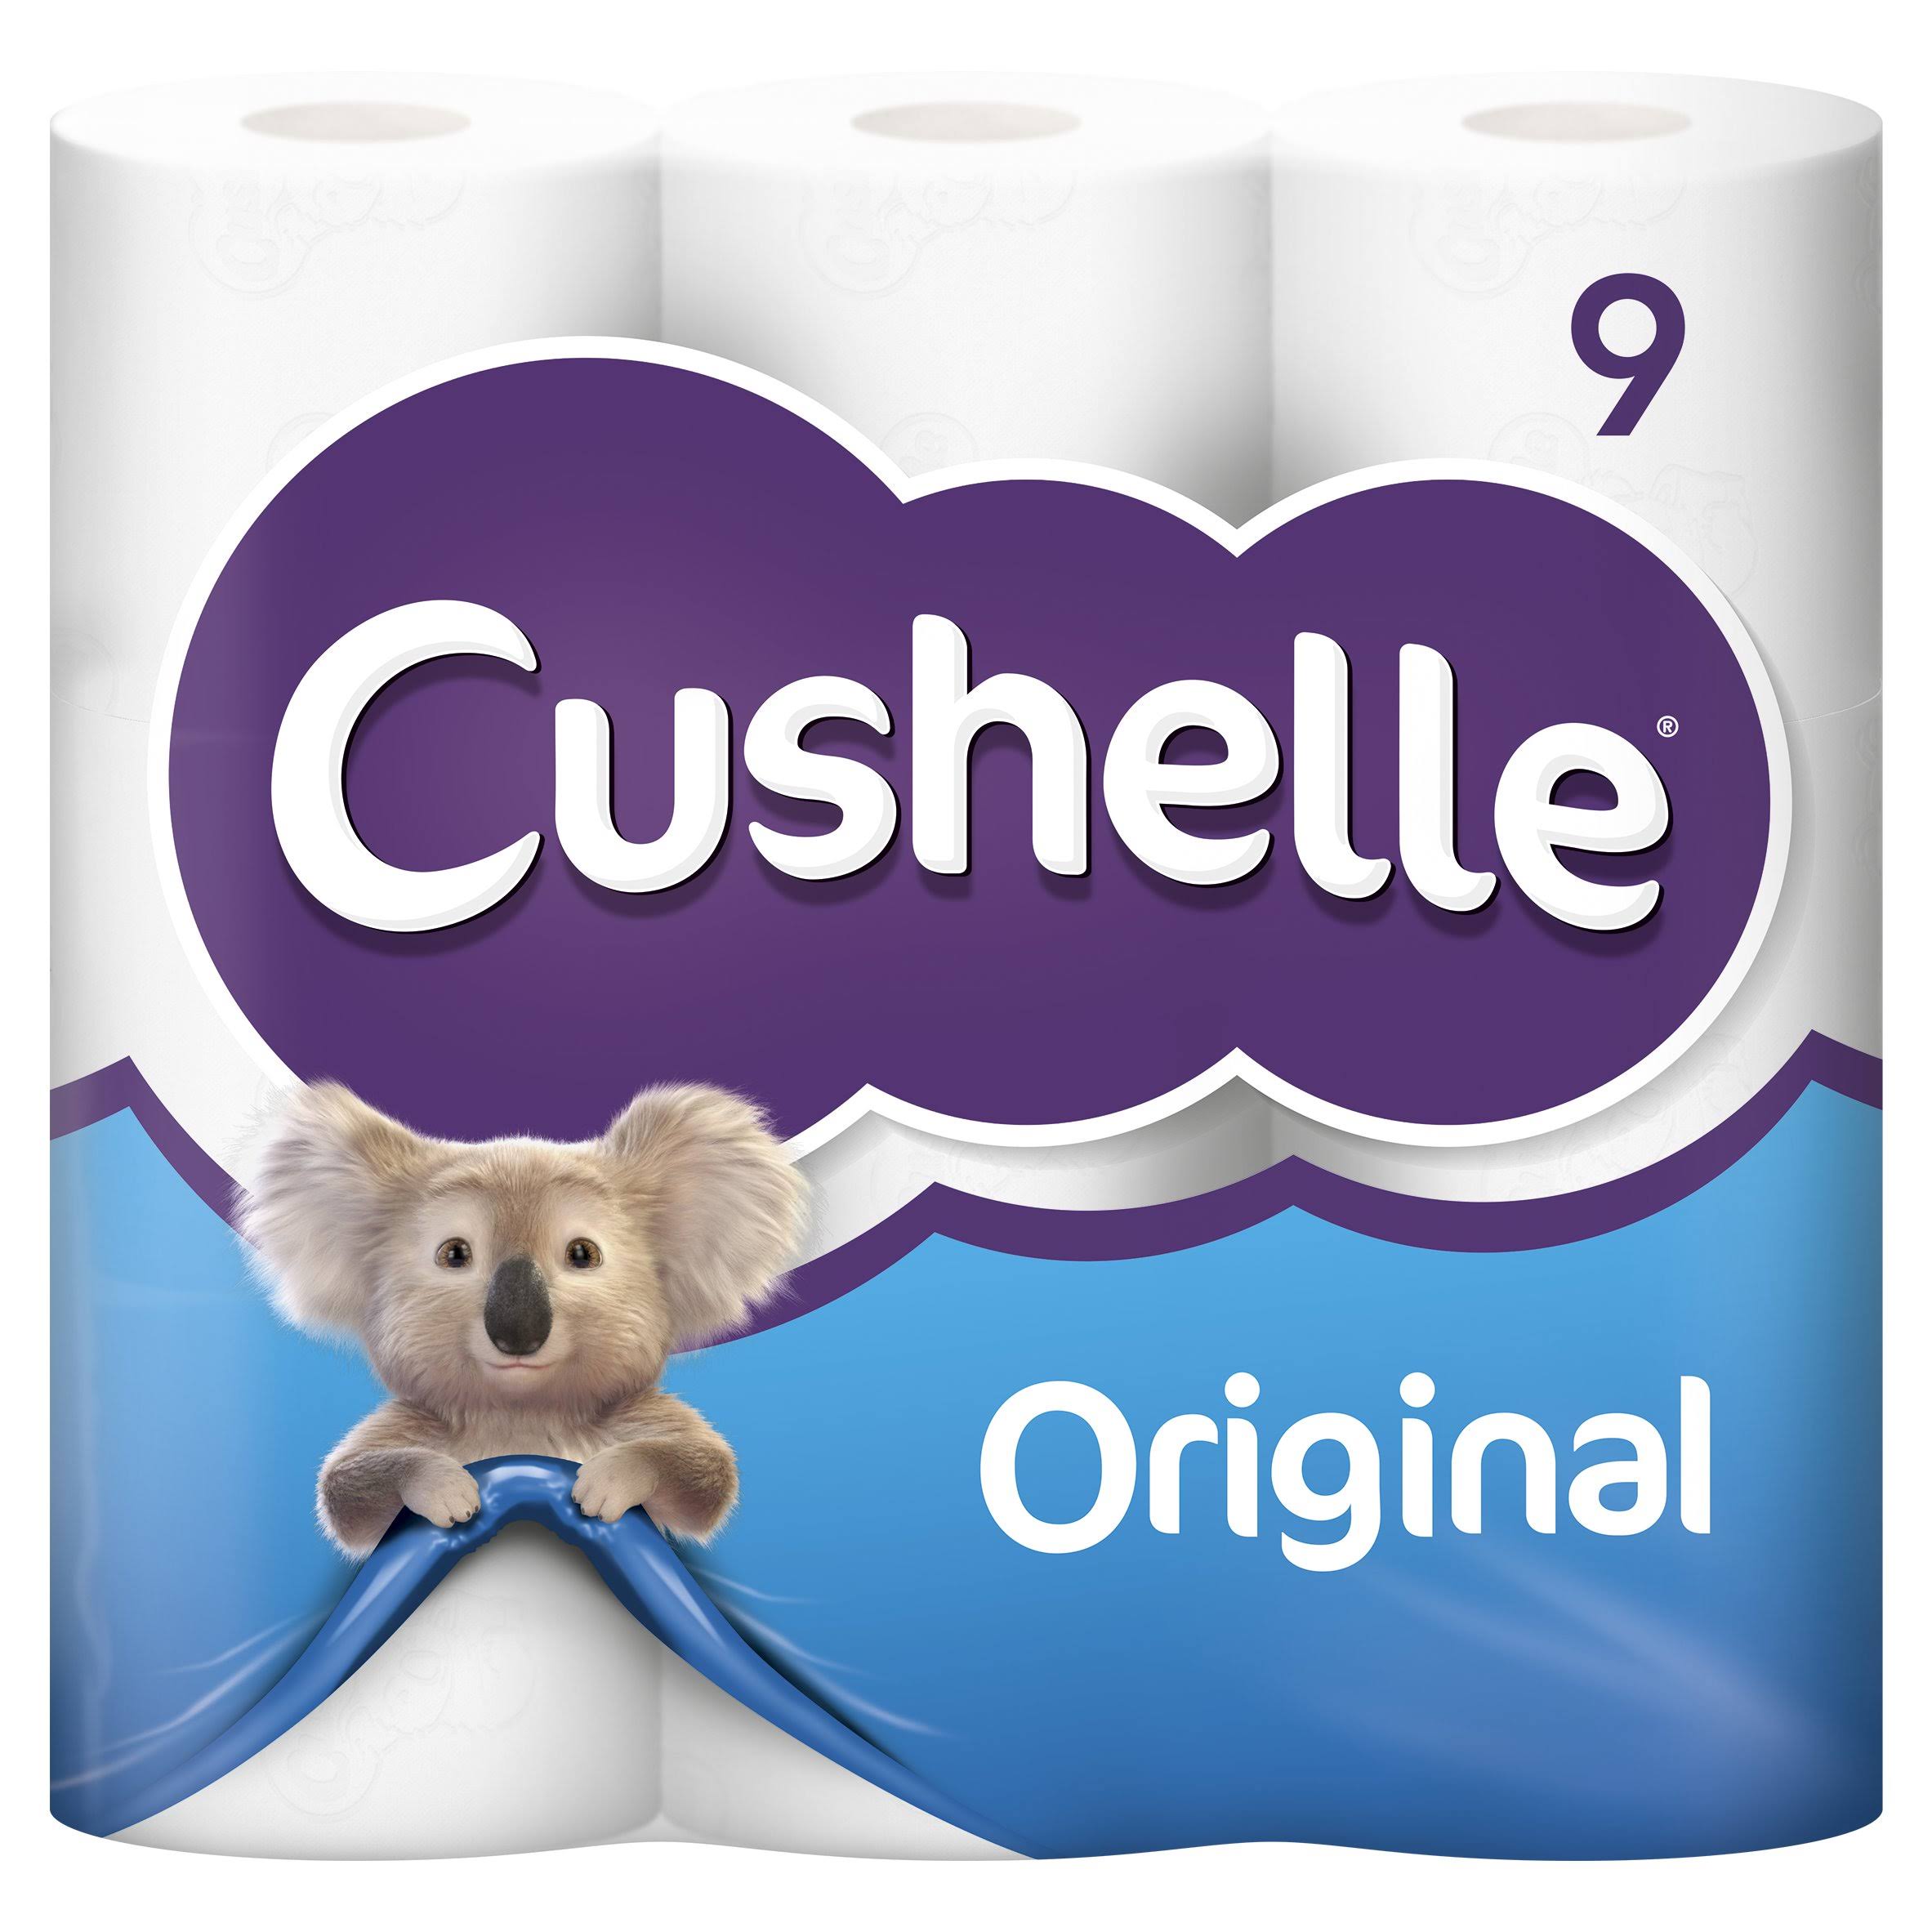 Cushelle Toilet Tissue Pack - 9pk